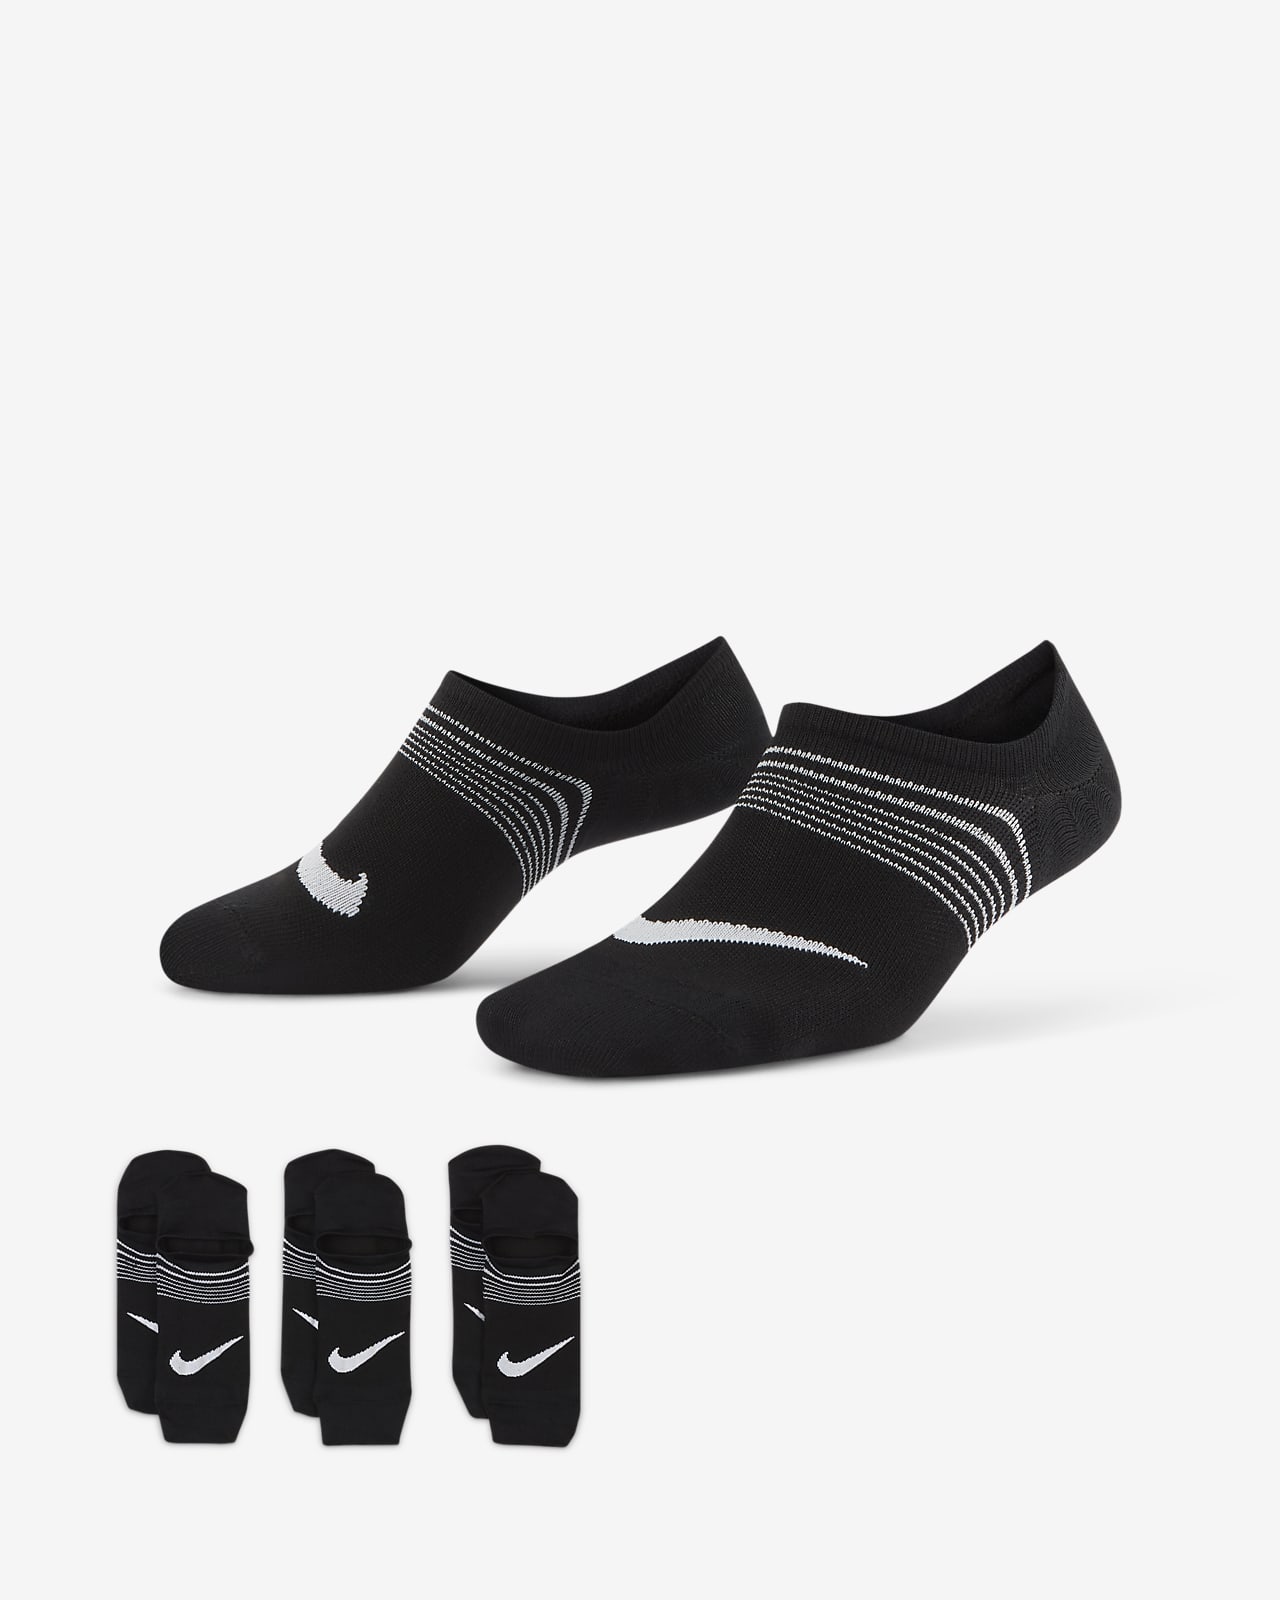 footie socks for women